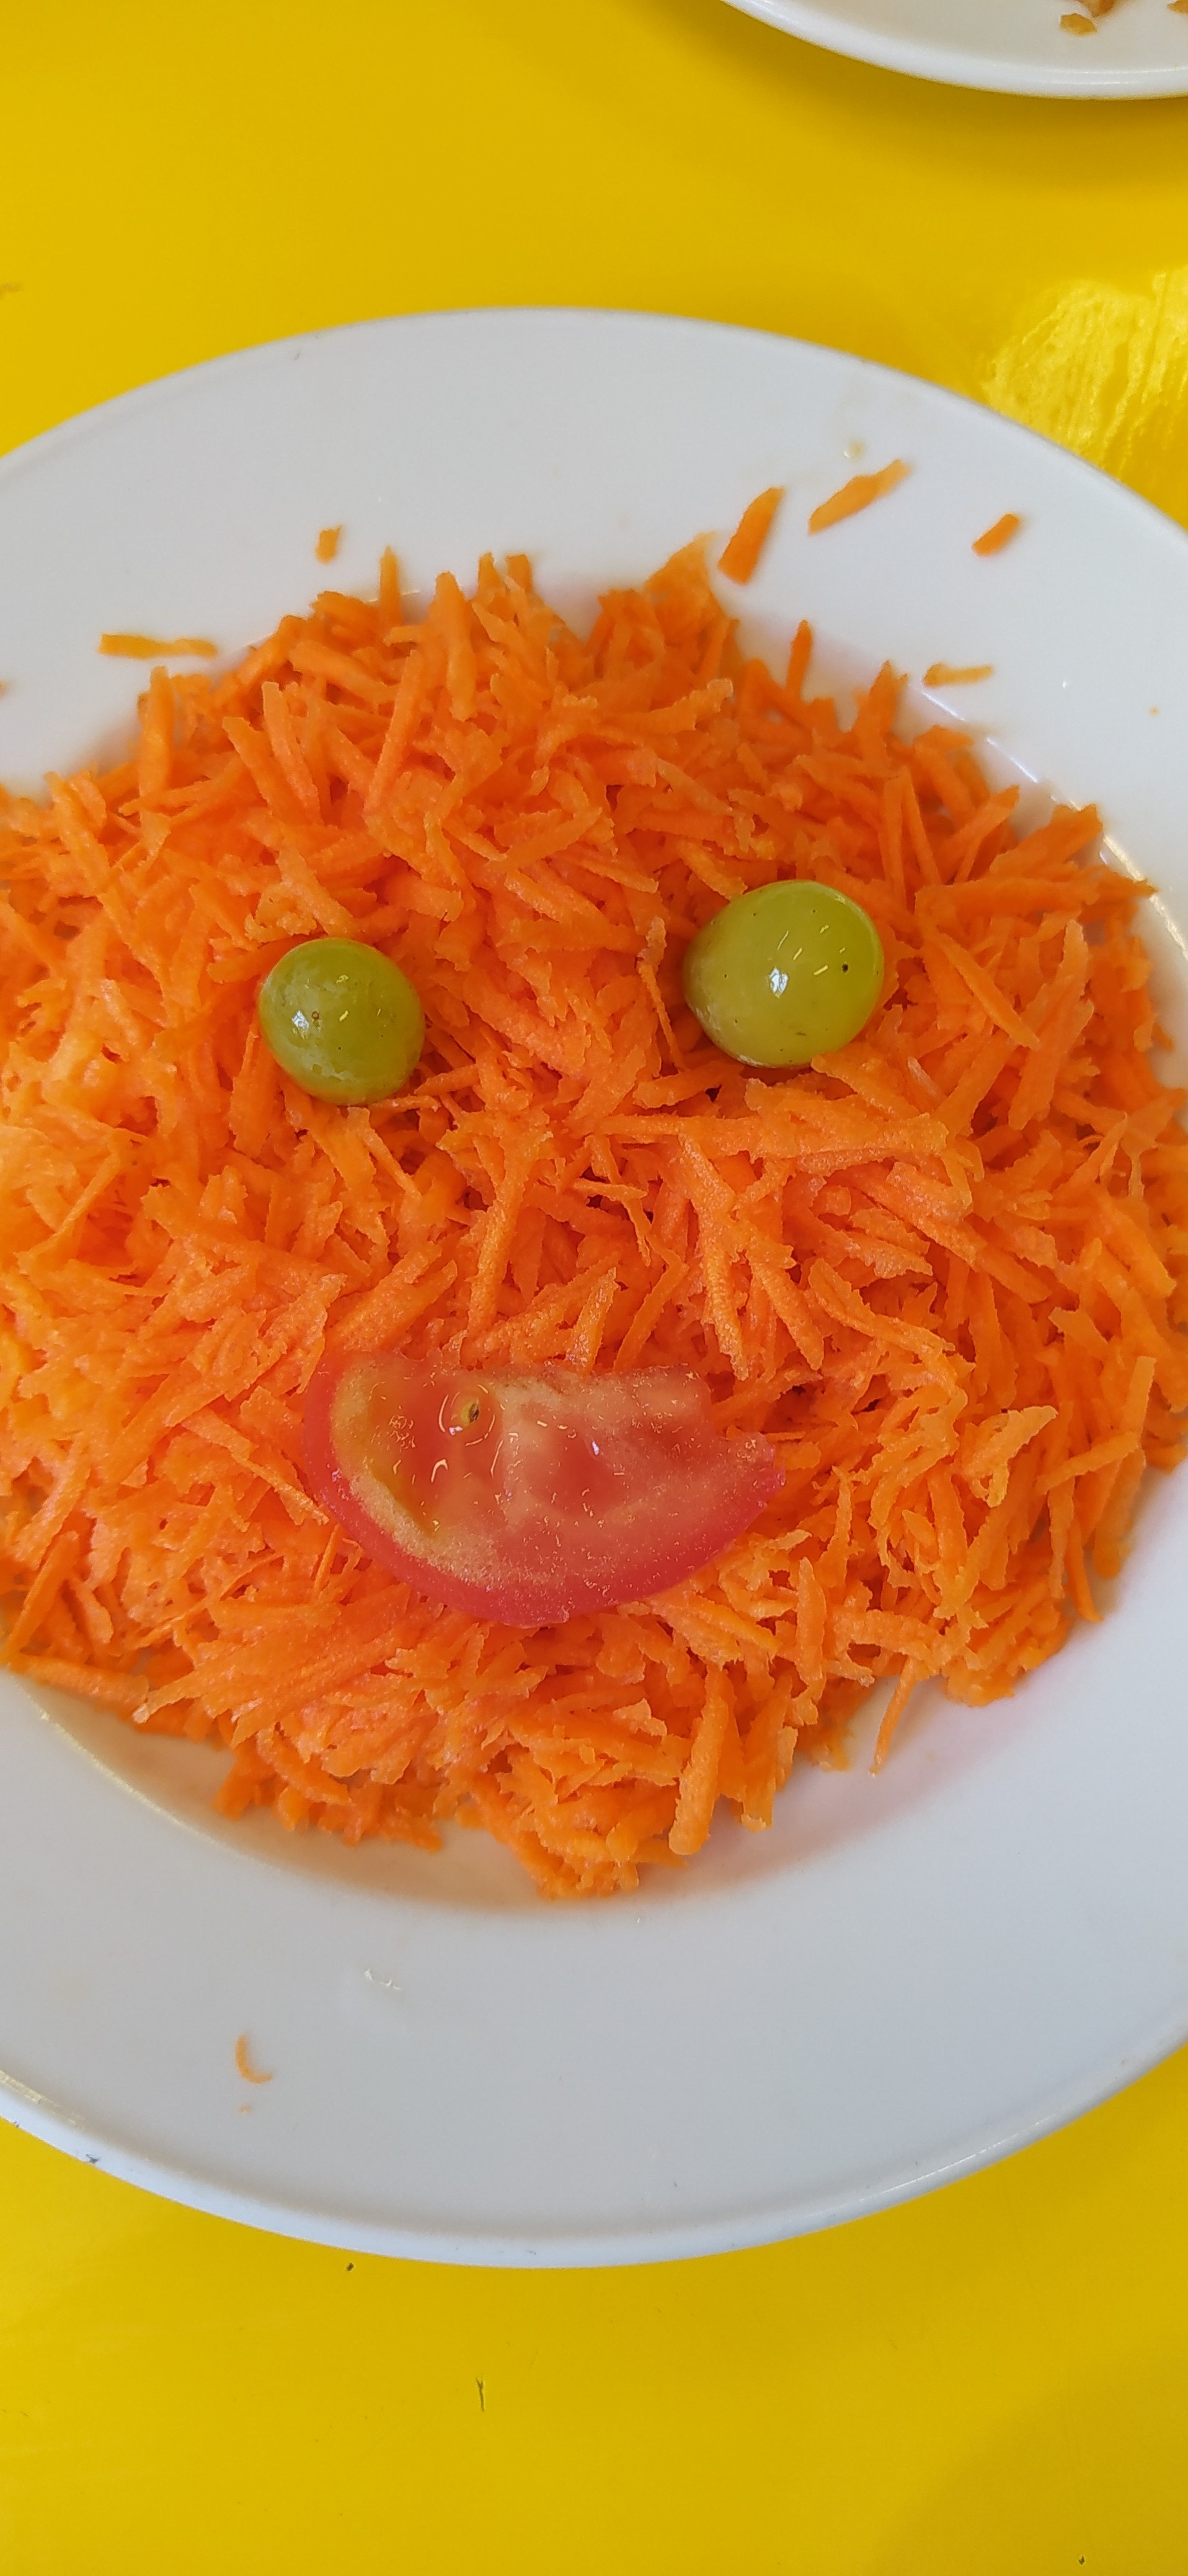 Com a cenoura ralada  com a colaboração de algumas crianças, realizou-se um prato colorido, e as crianças estavam felizes com o produto final, a cenoura tinha muito bom aspeto.